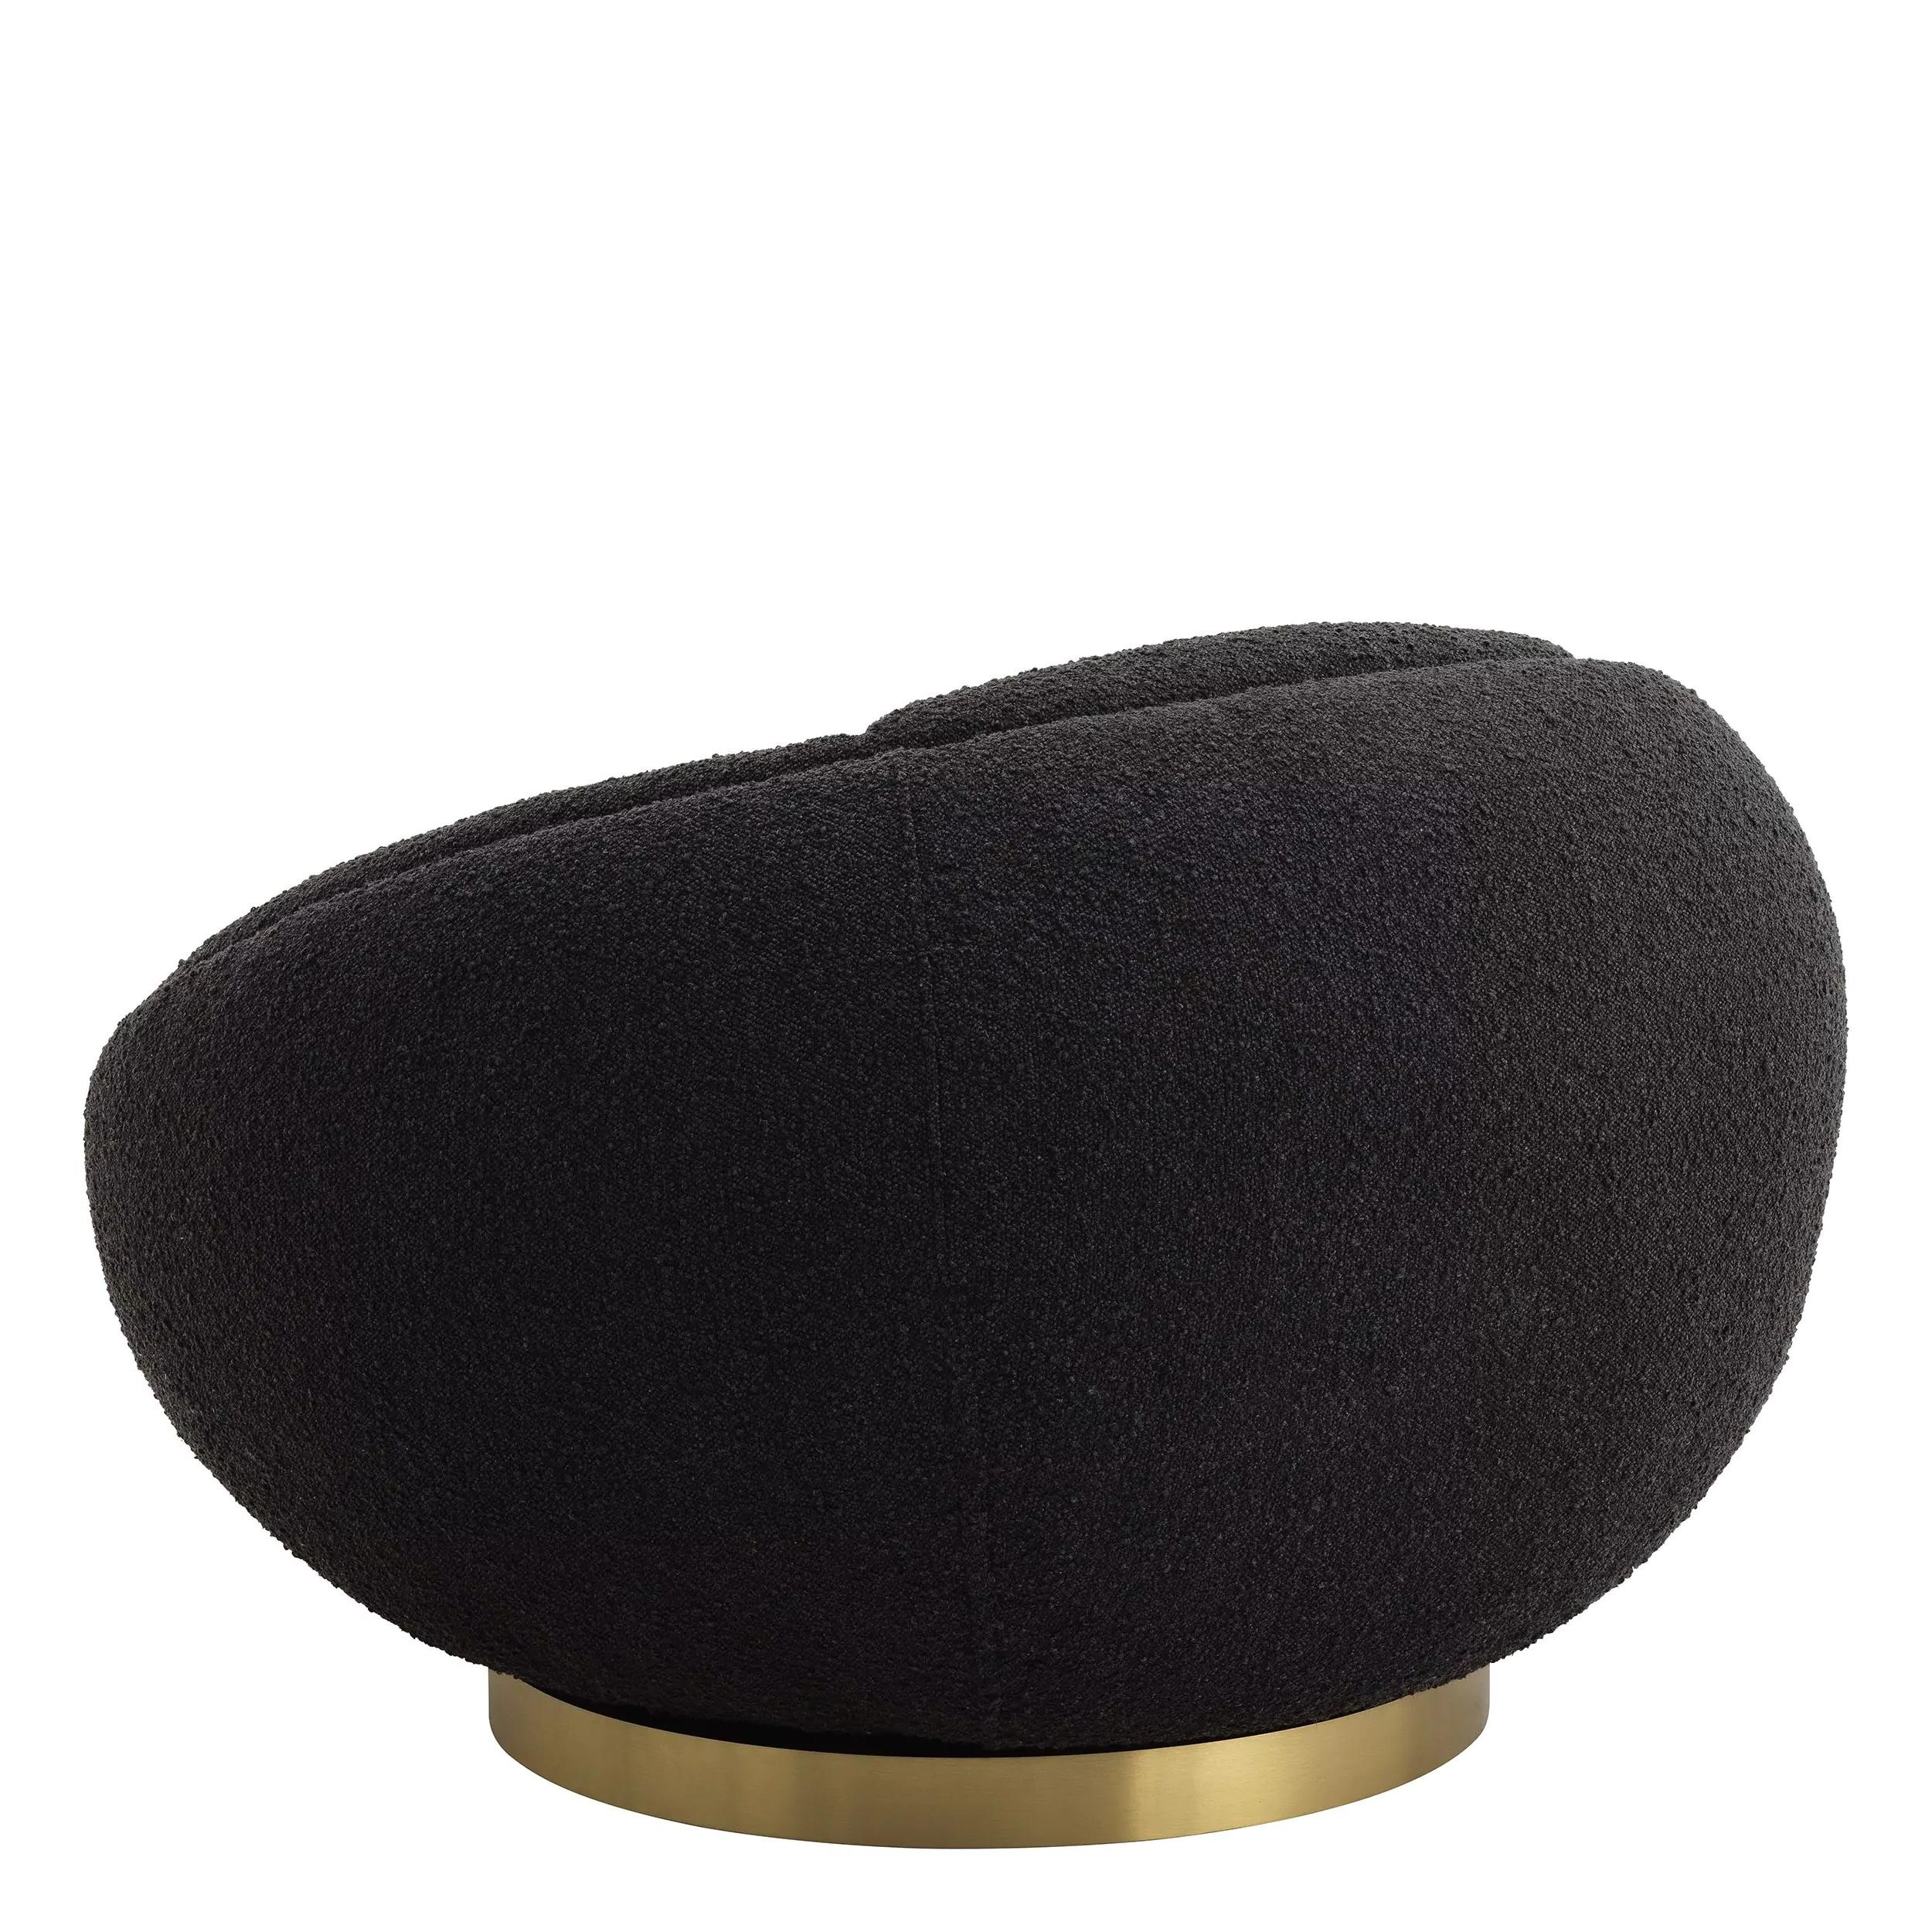 Fauteuil pivotant accueillant et de forme ronde en tissu bouclé noir avec des finitions en laiton.